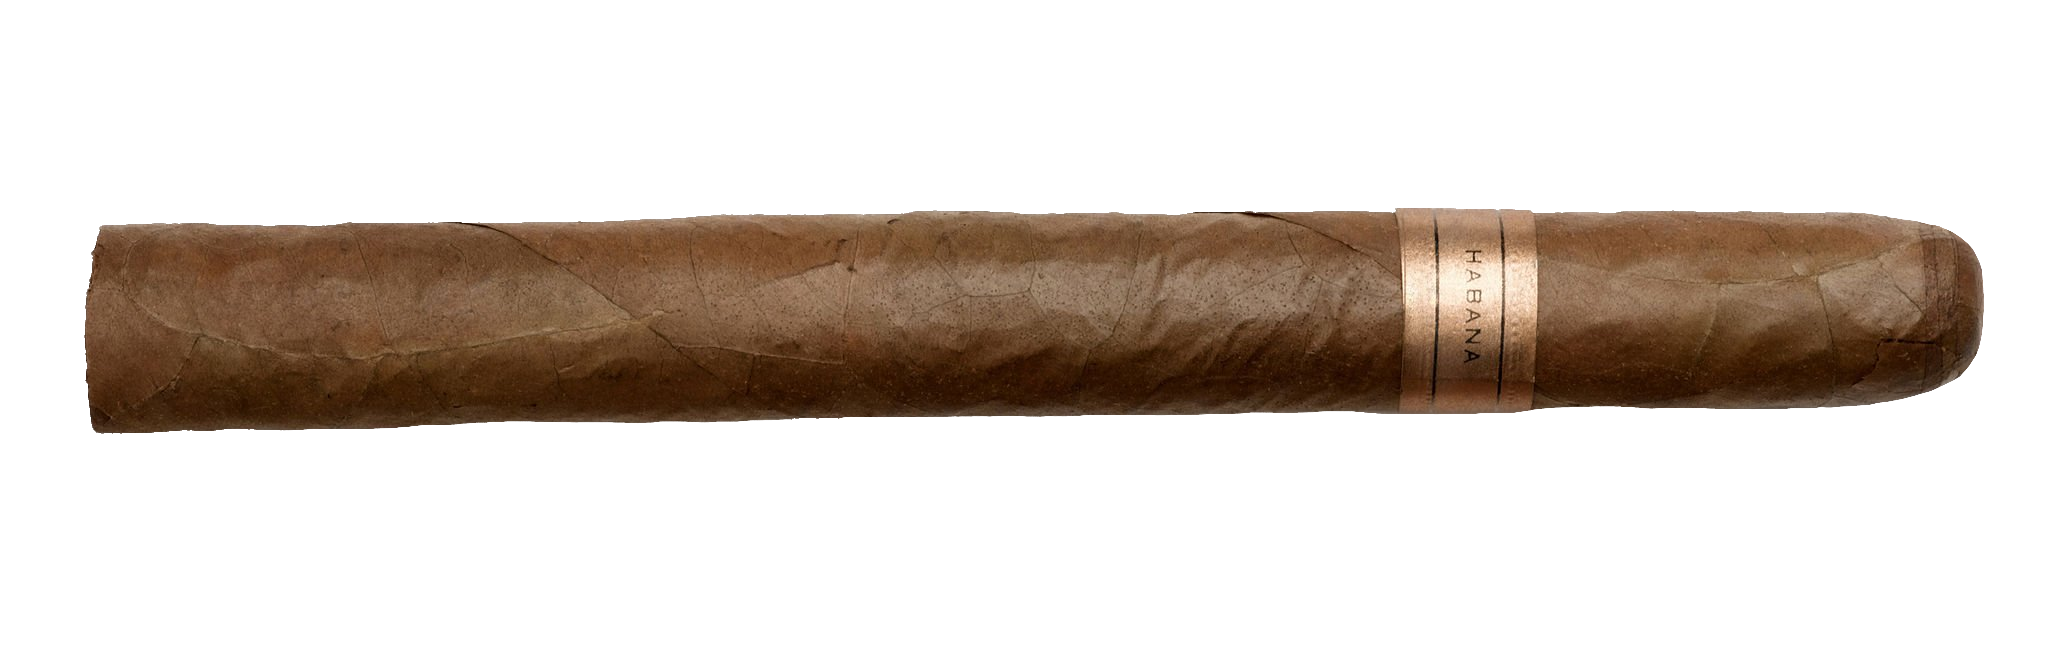 cigar-61